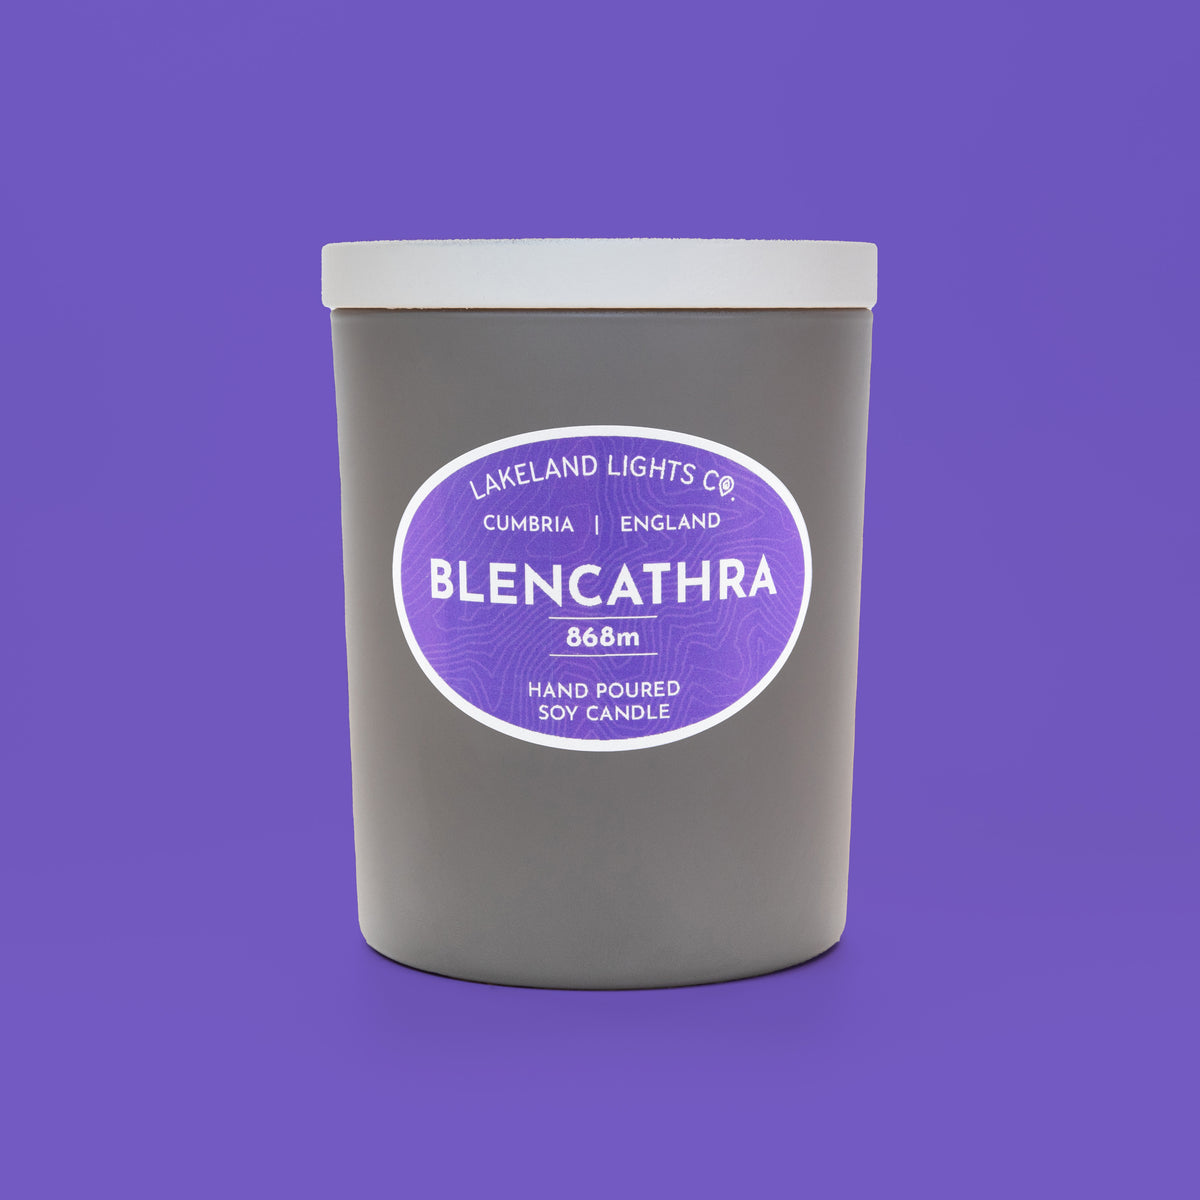 Blencathra